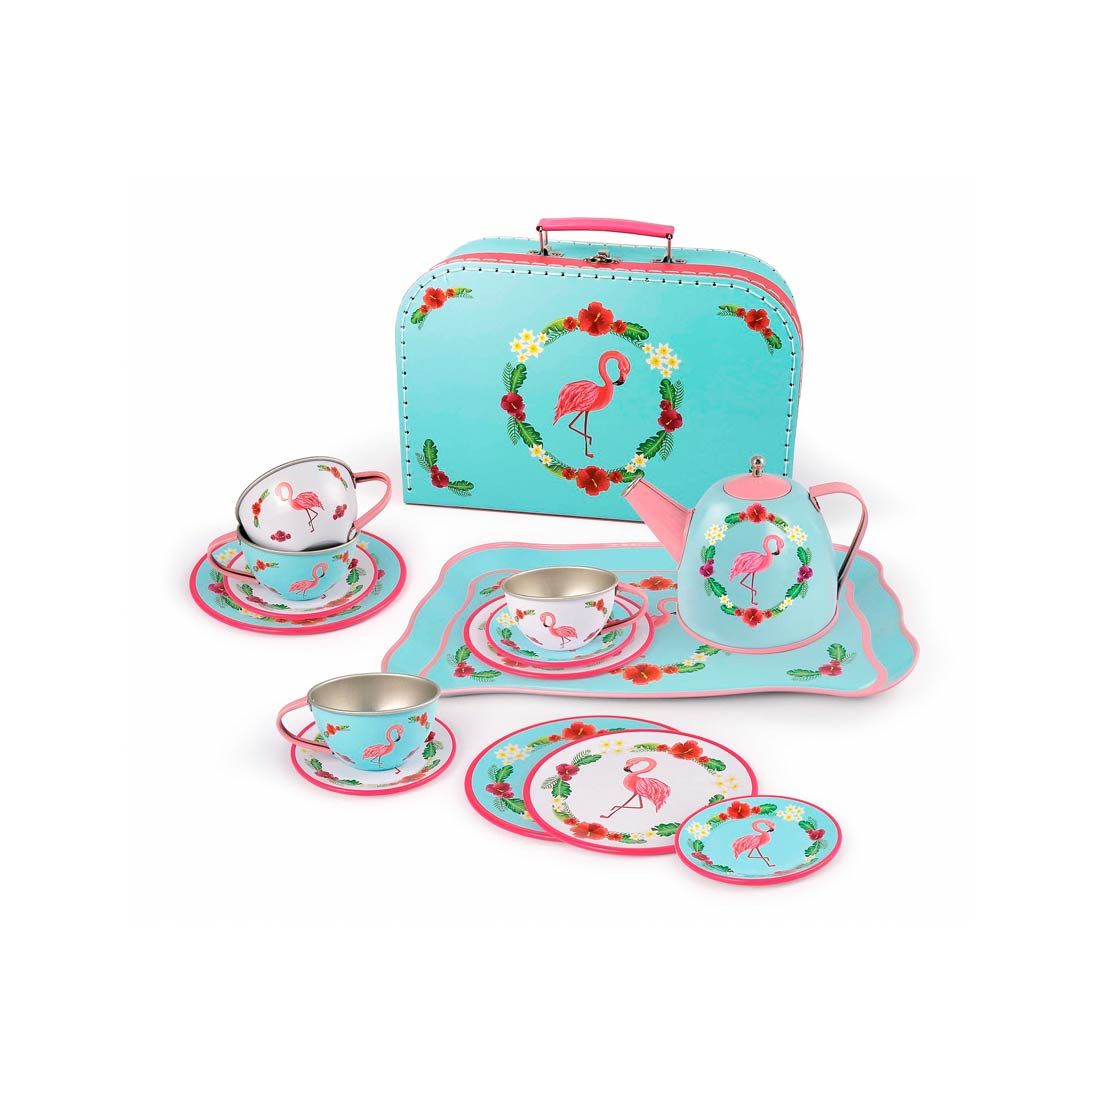 kuffert til børn med service i aluminium dekoreret med flotte flamingoer sættet består af 15 dele